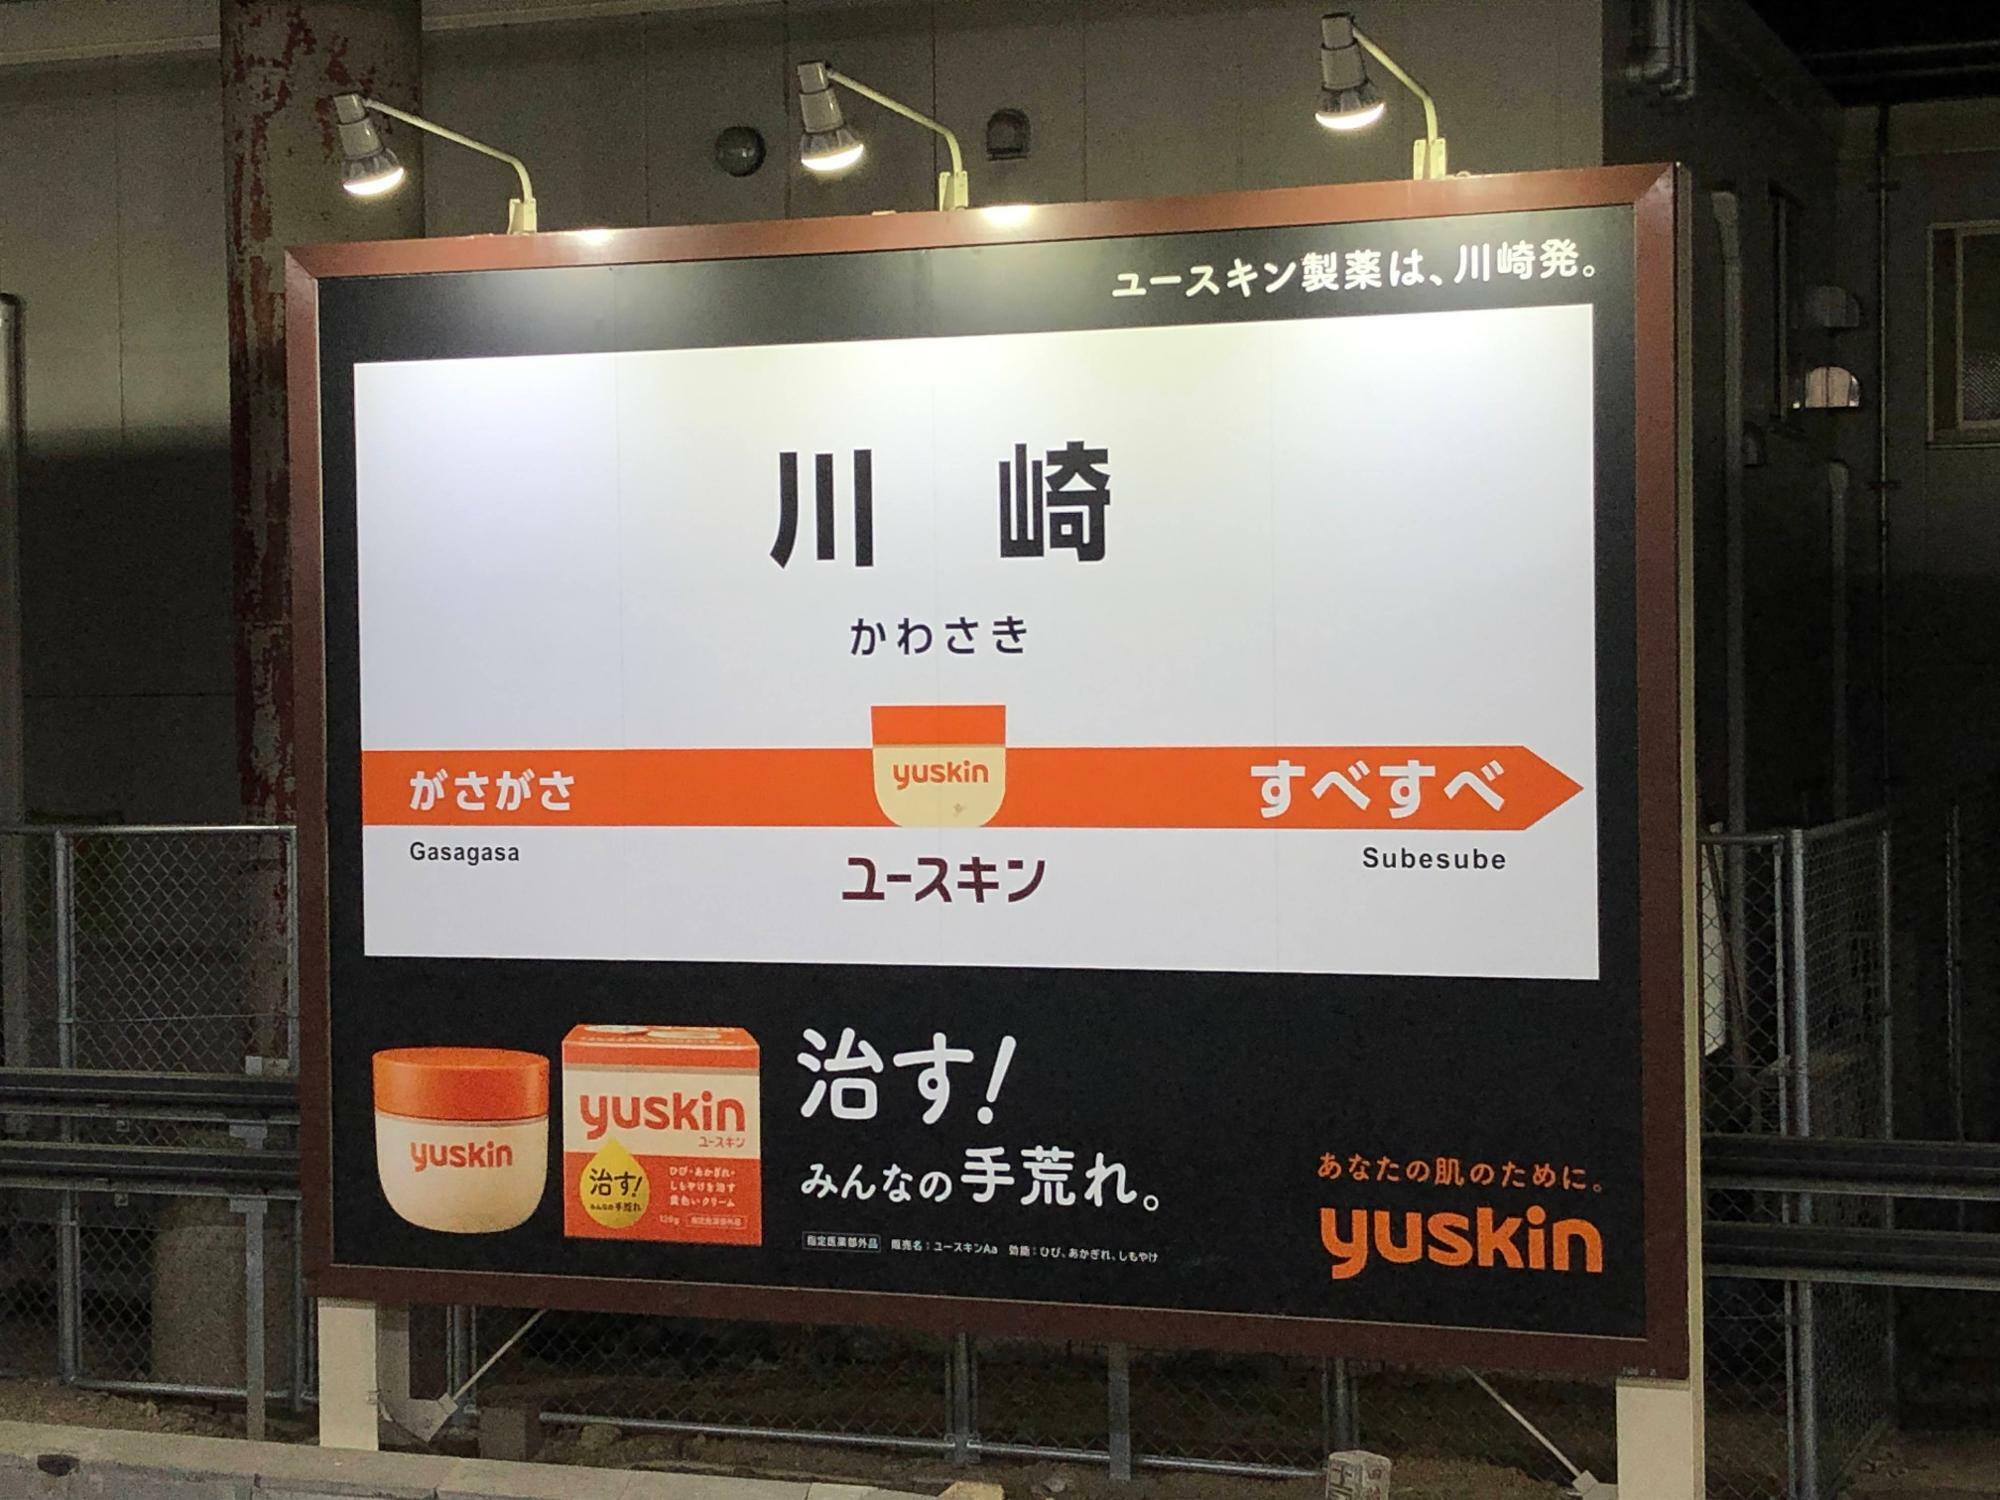 川崎が誇る優良企業「ユースキン」の広告がかわいい